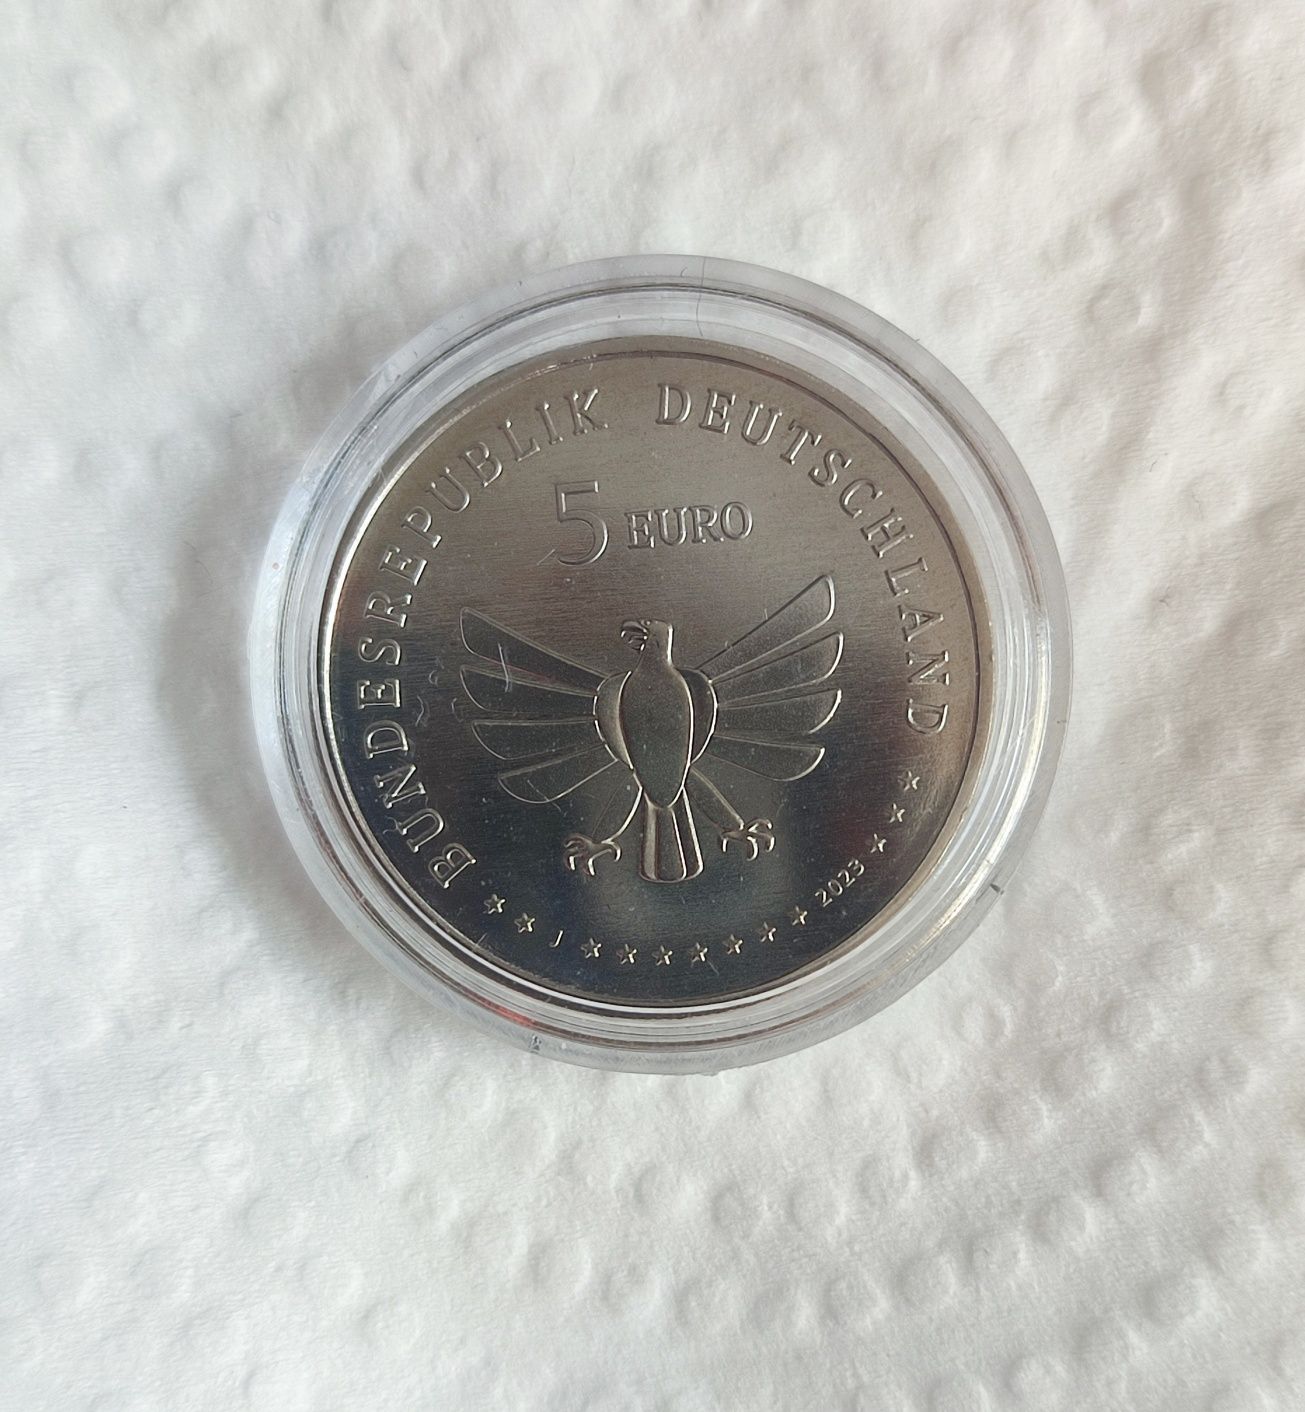 5€ euro niemiecka moneta okolicznościowa Świat owadów